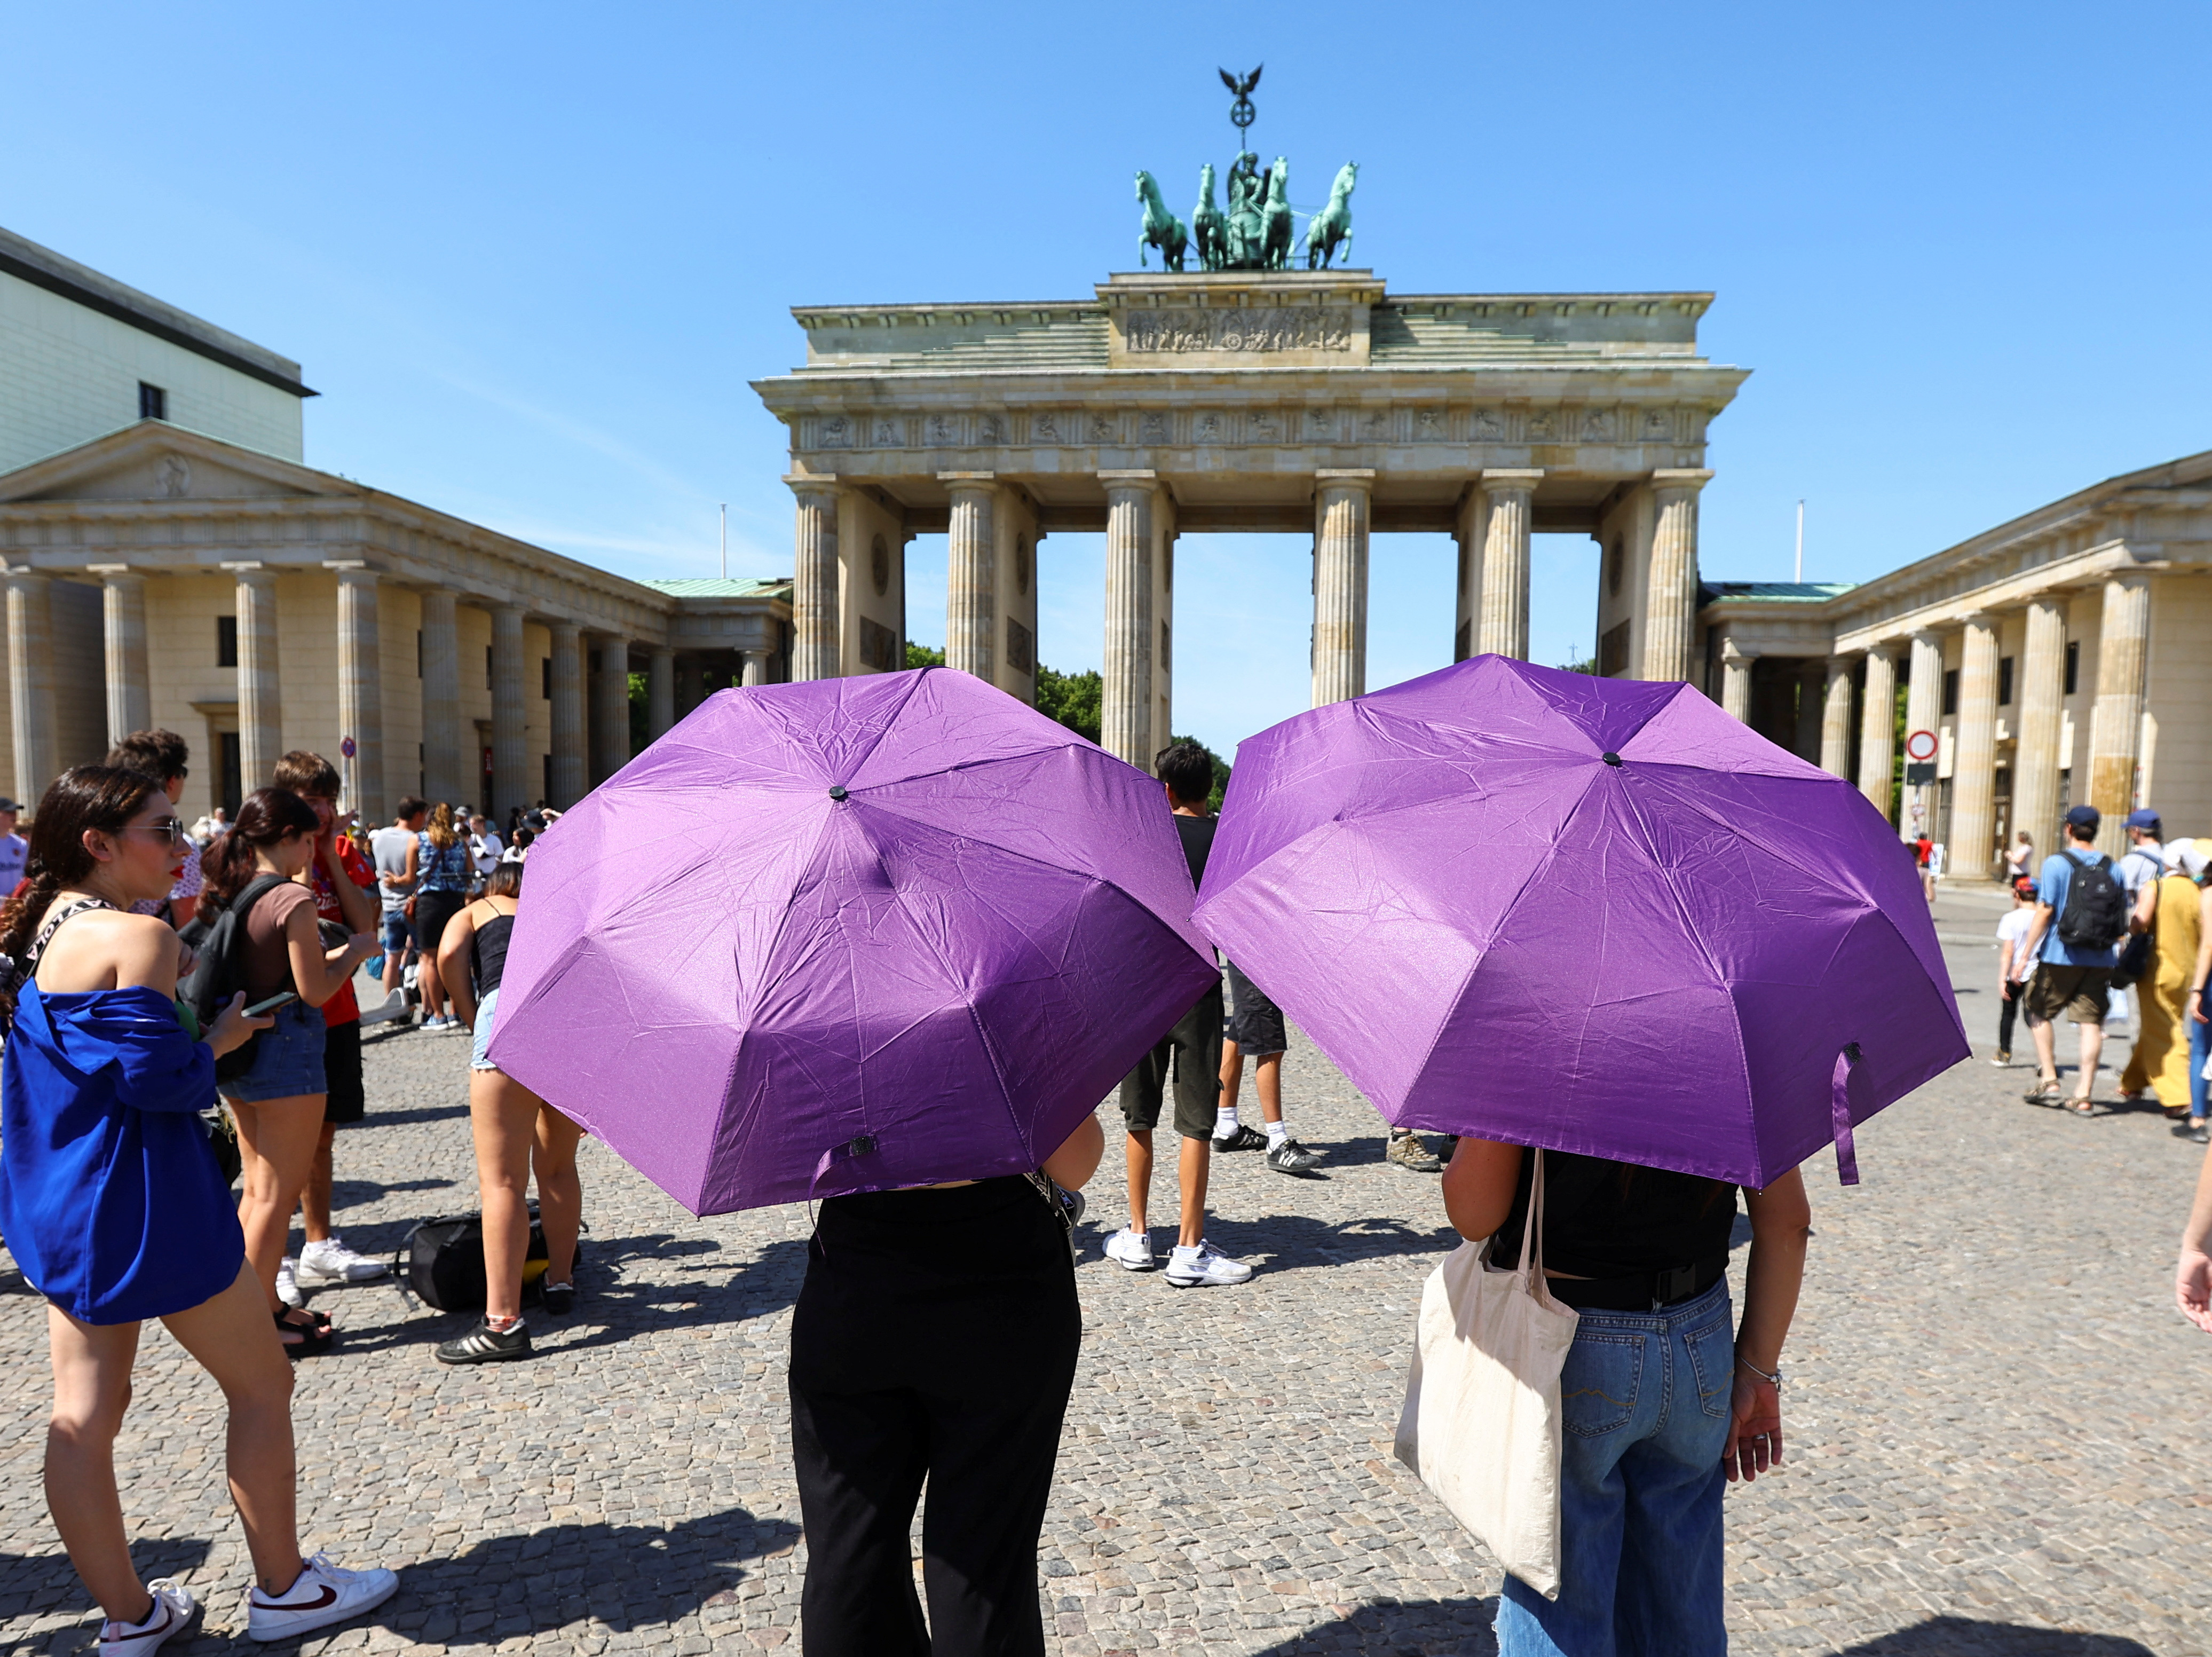 In Germania, le persone stanno uscendo con gli ombrelli per proteggersi dal sole poiché si prevede che alcune parti occidentali supereranno il precedente massimo dell'anno, fissato a 39,2 gradi il 19 giugno.